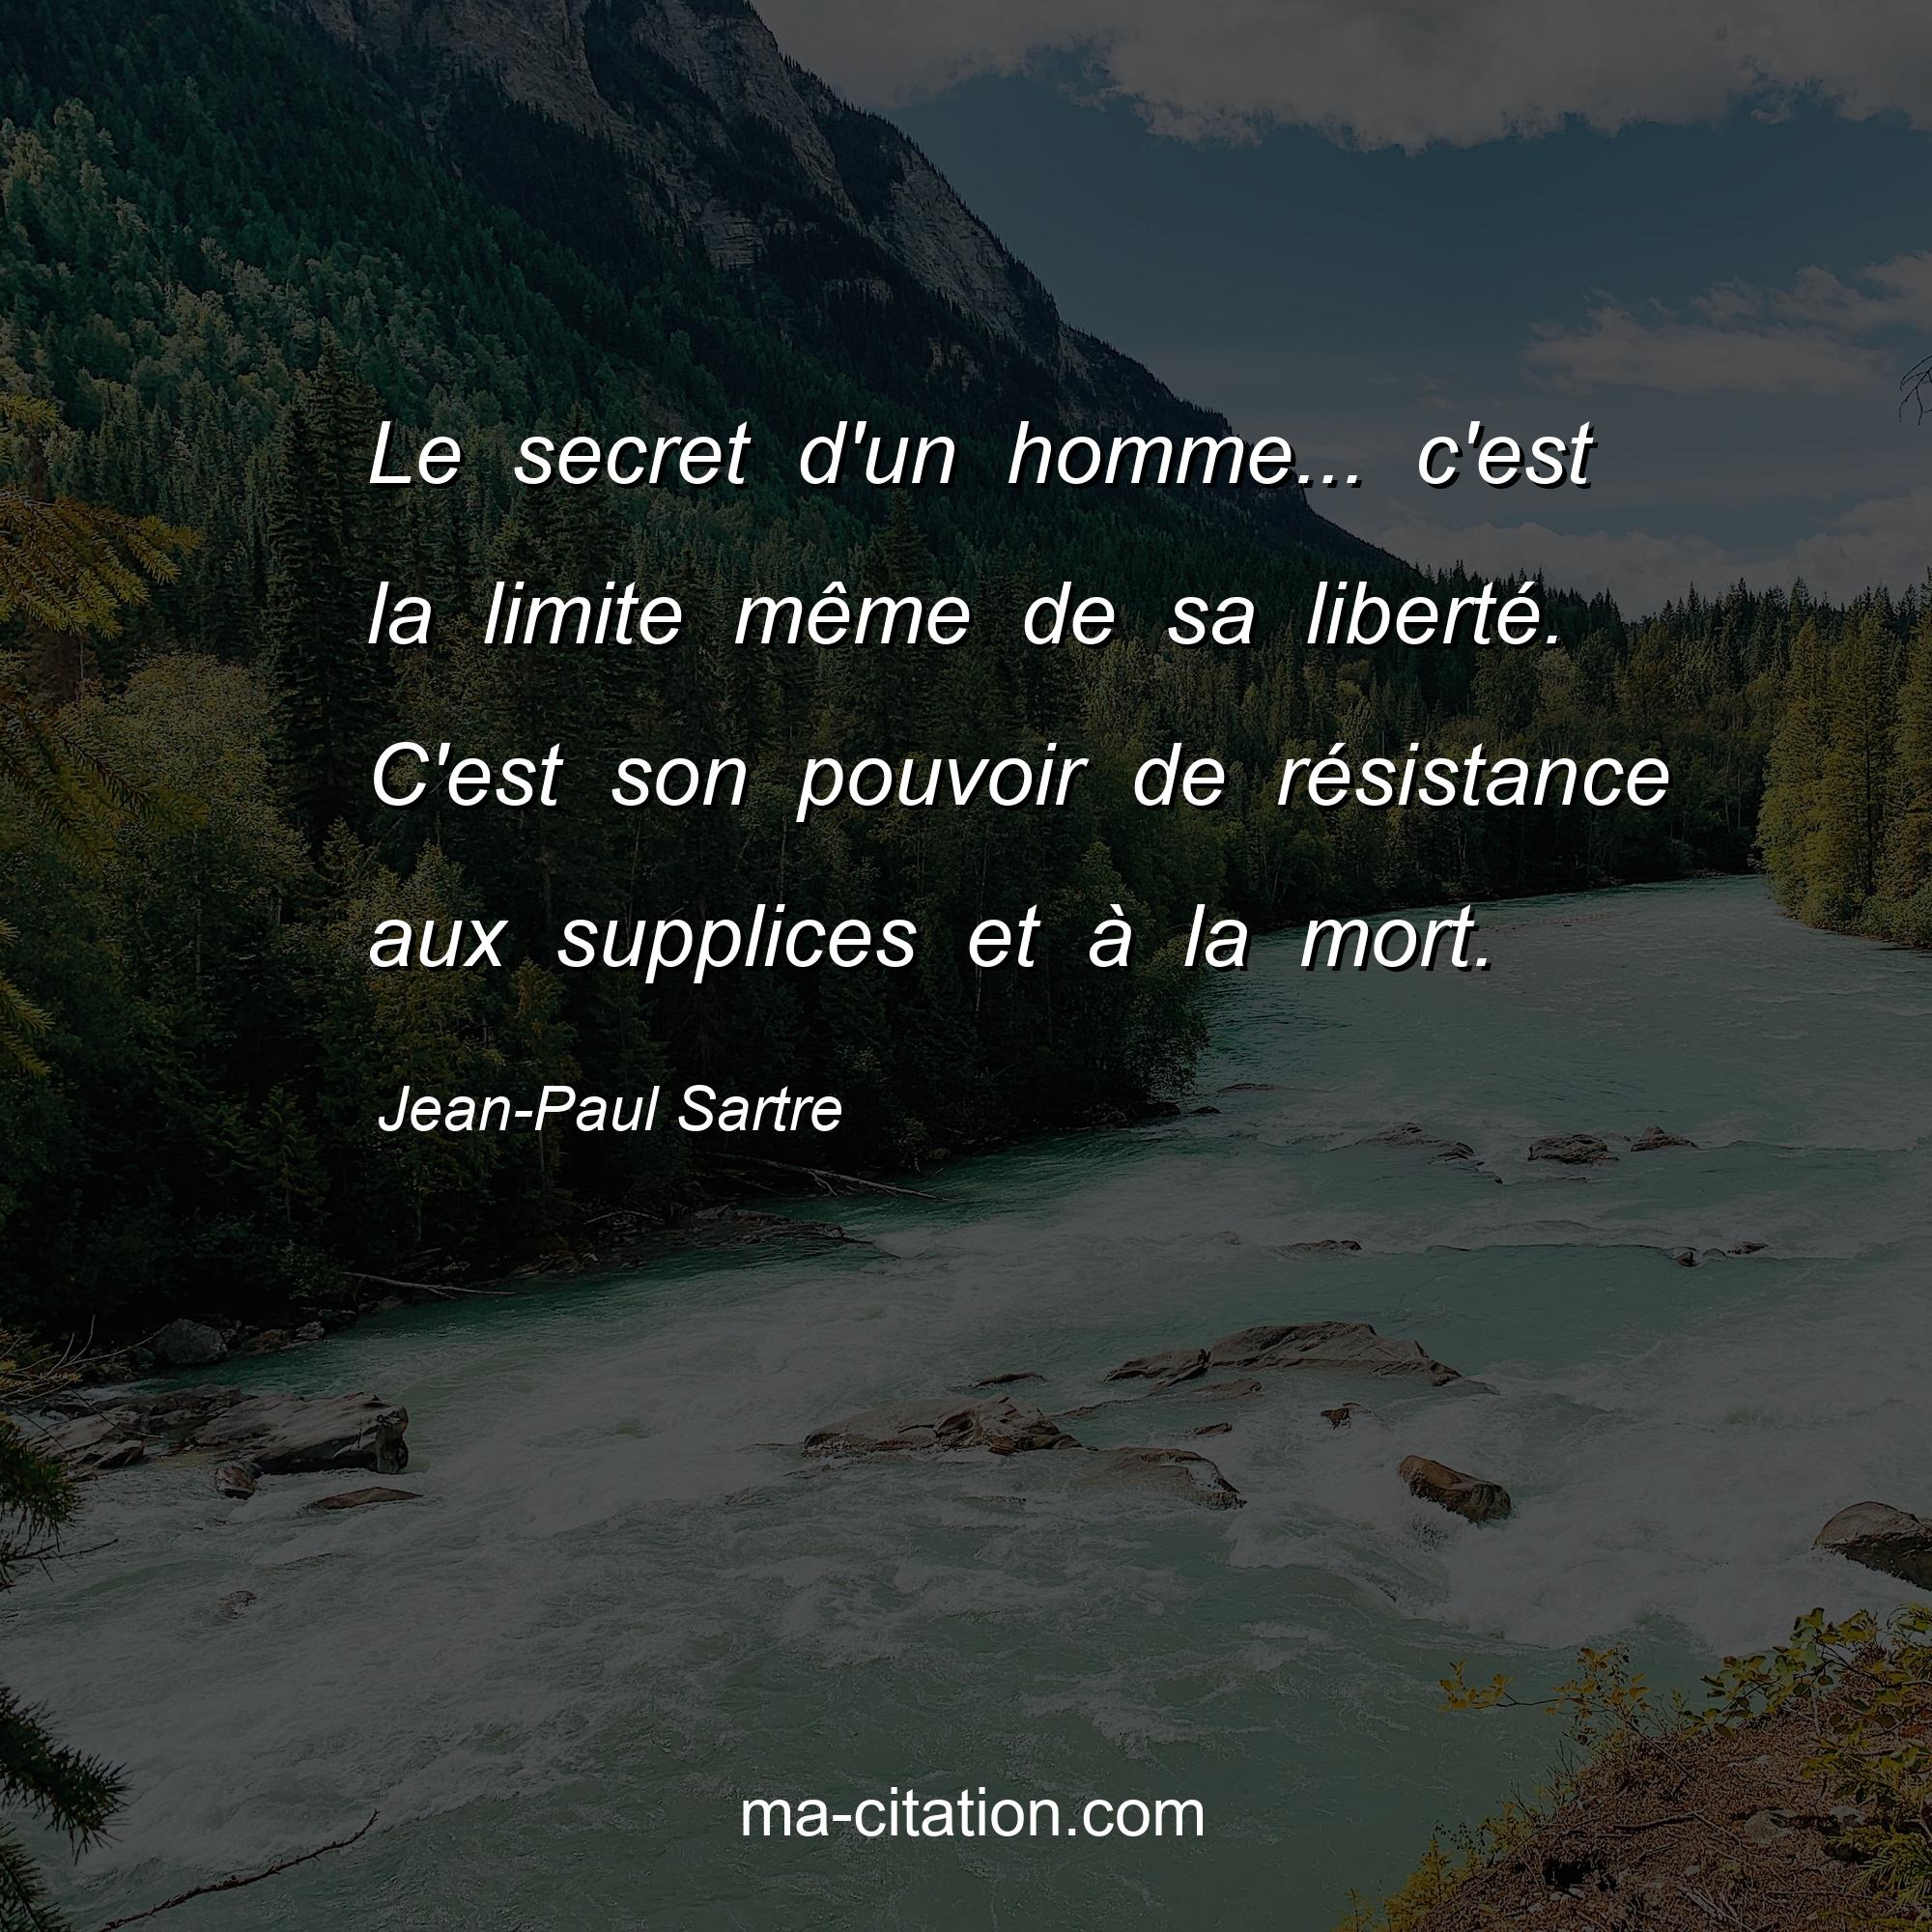 Jean-Paul Sartre : Le secret d'un homme... c'est la limite même de sa liberté. C'est son pouvoir de résistance aux supplices et à la mort.